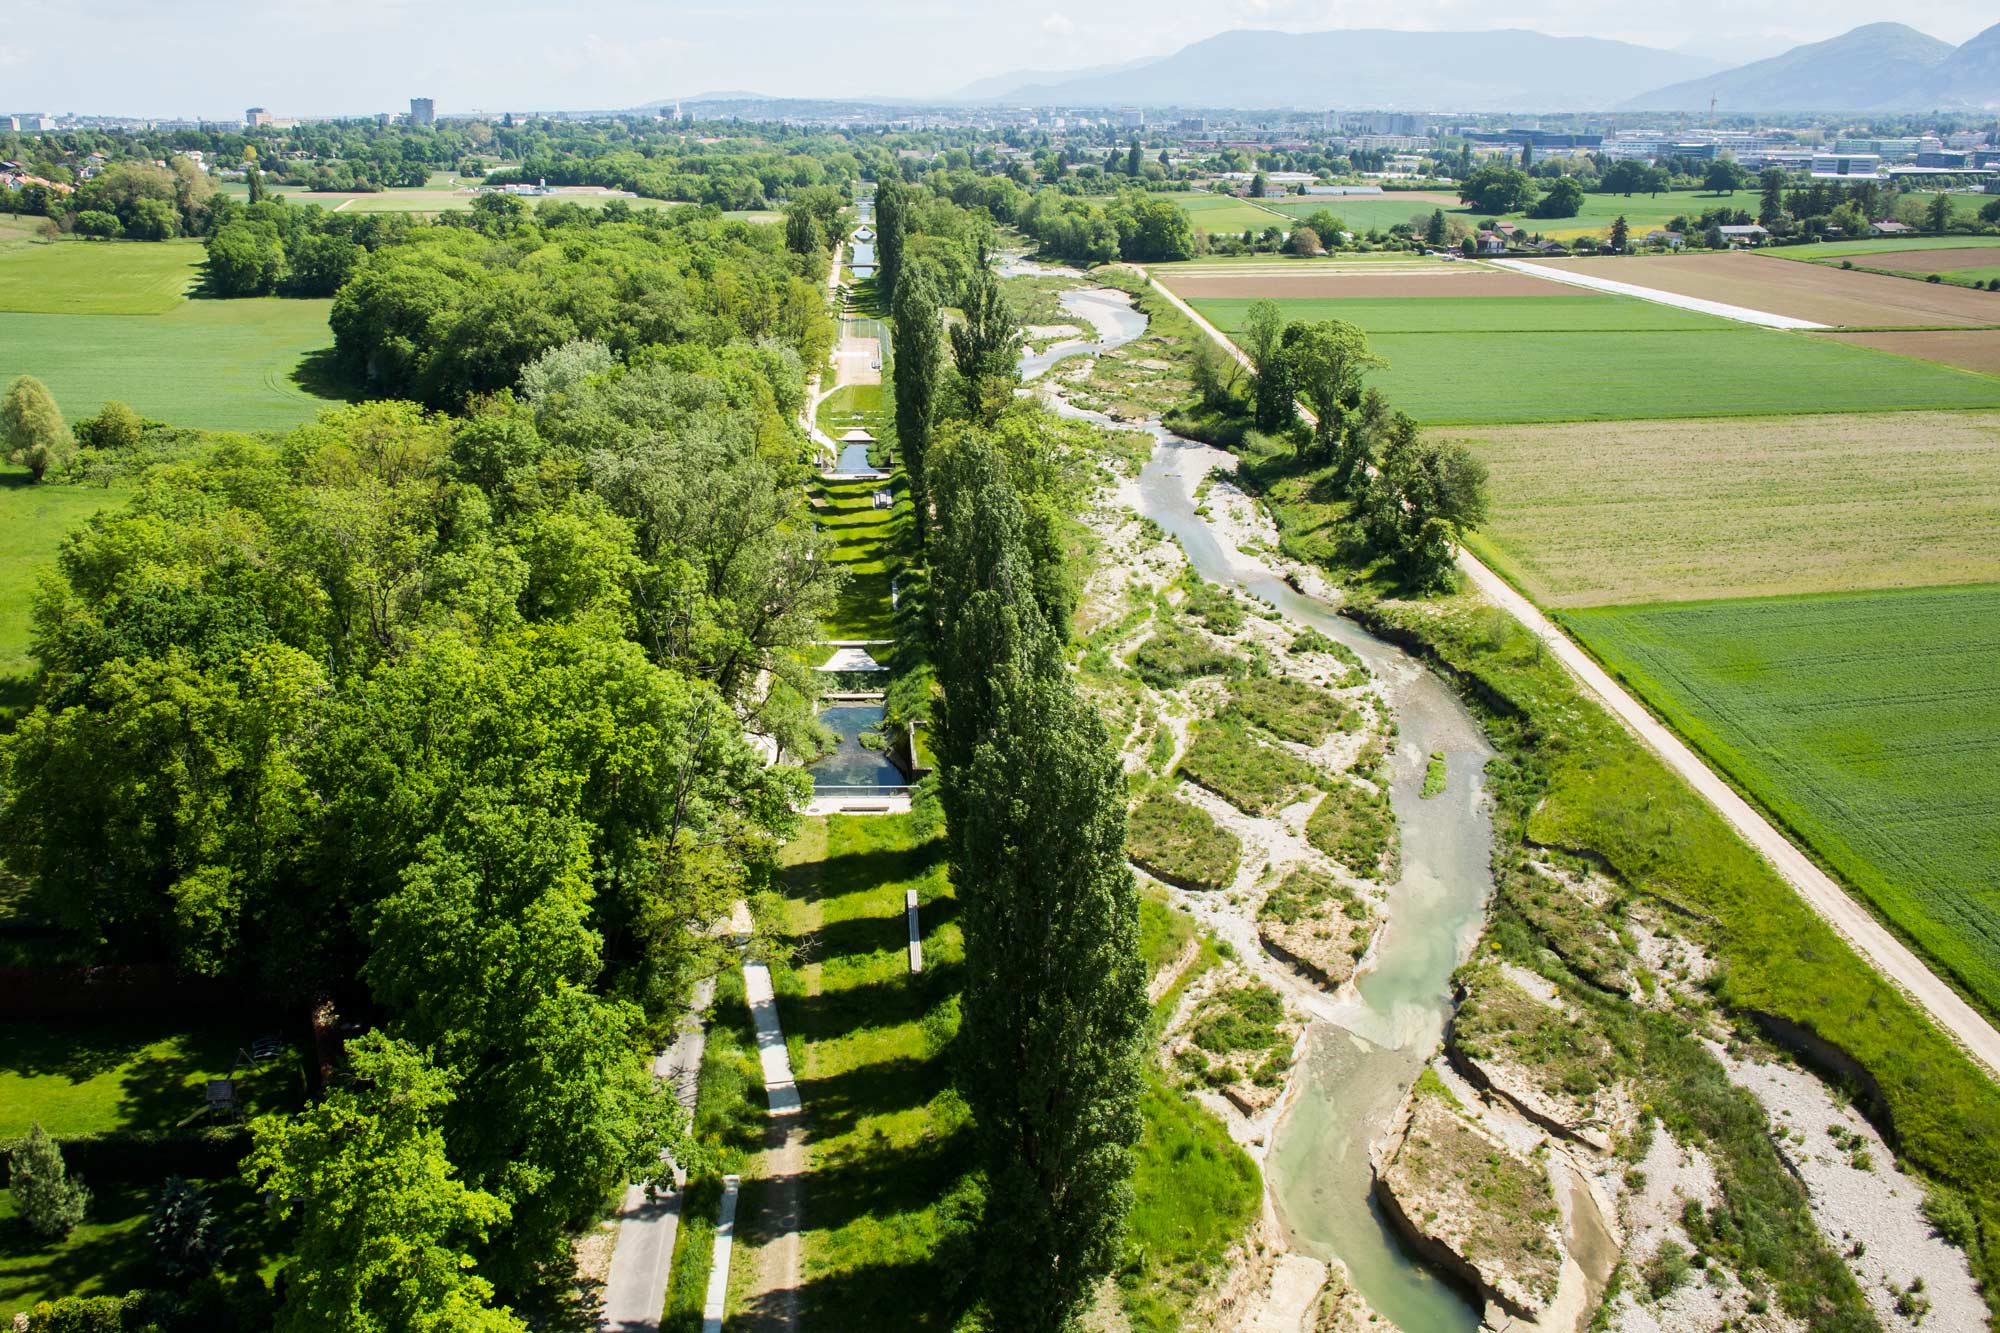 Renaturation of the River Aire, Geneva « Landscape Architecture ...